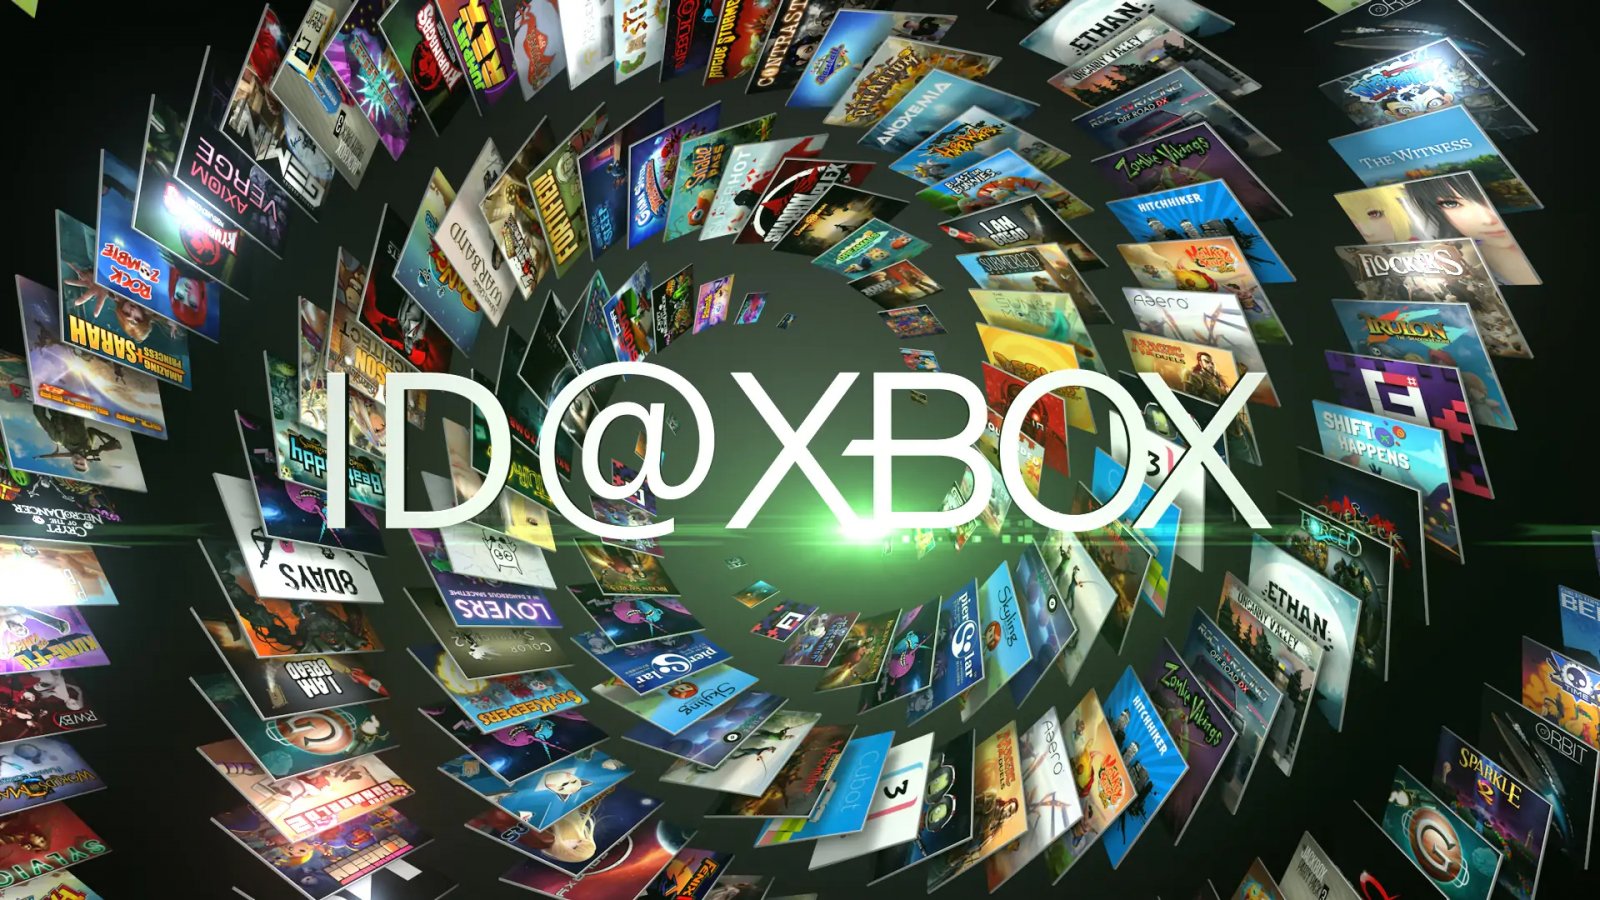 ID@Xbox: abbiamo visto in anteprima quattro giochi partner di Microsoft